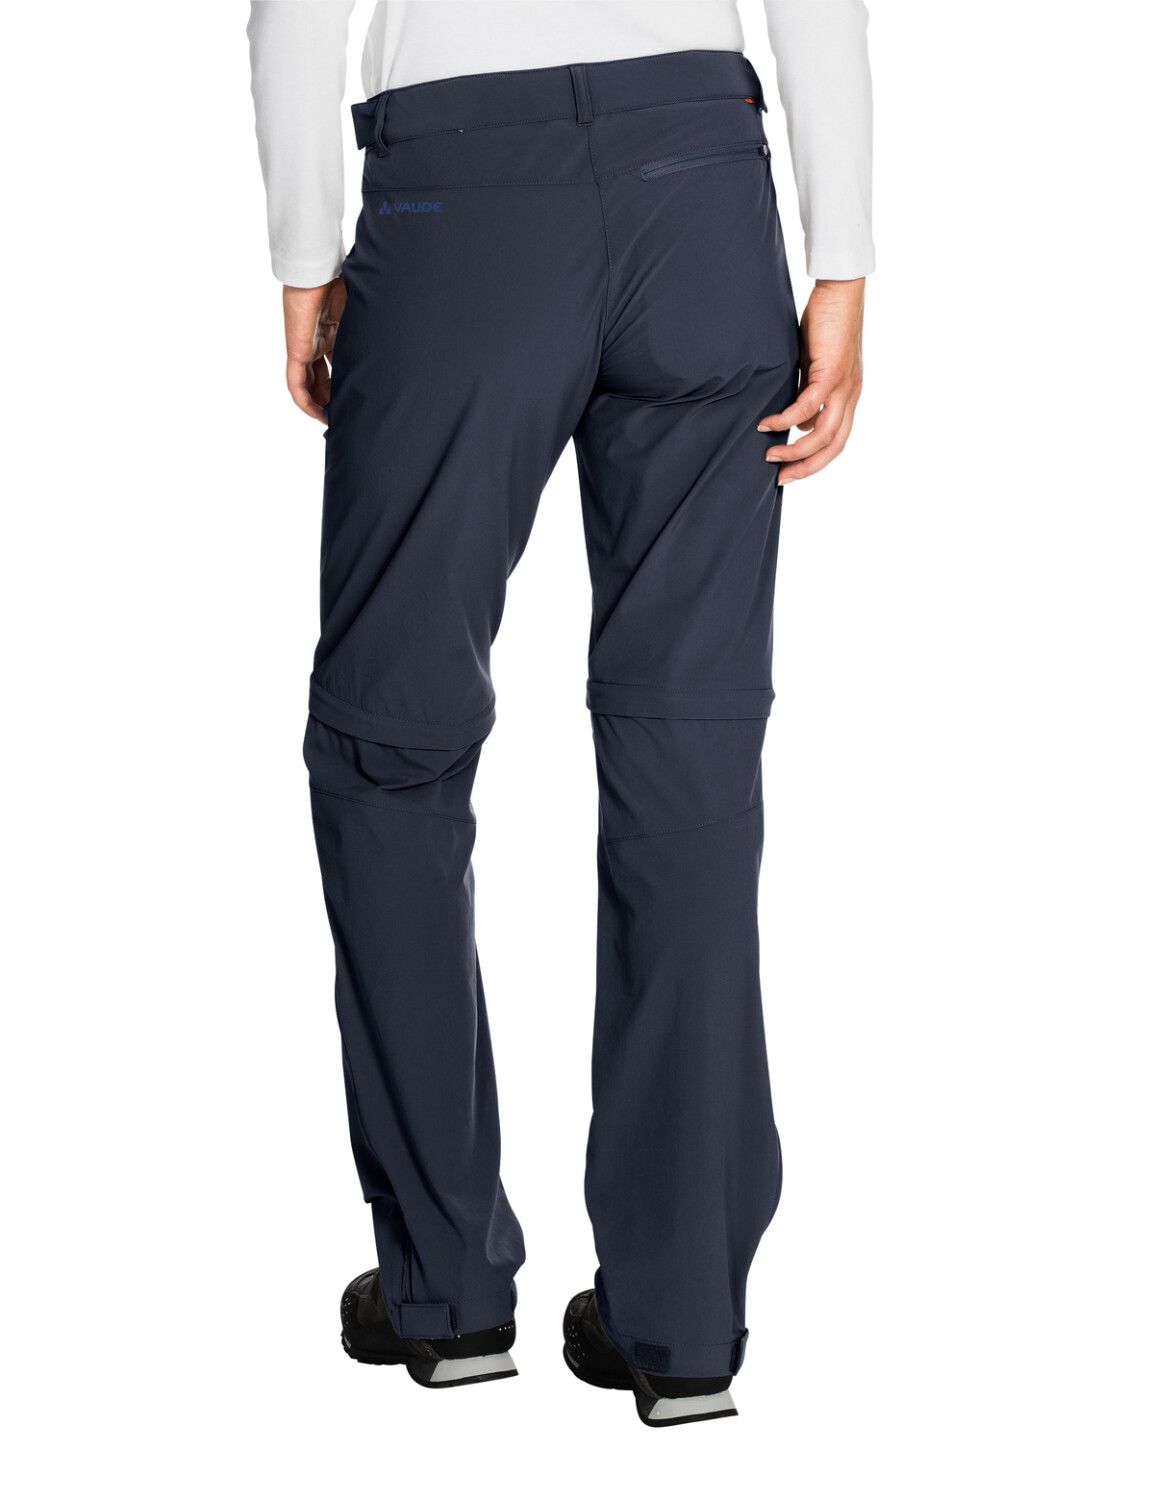 VAUDE Women's Farley Stretch ZO T-Zip Pants (Bild 54)